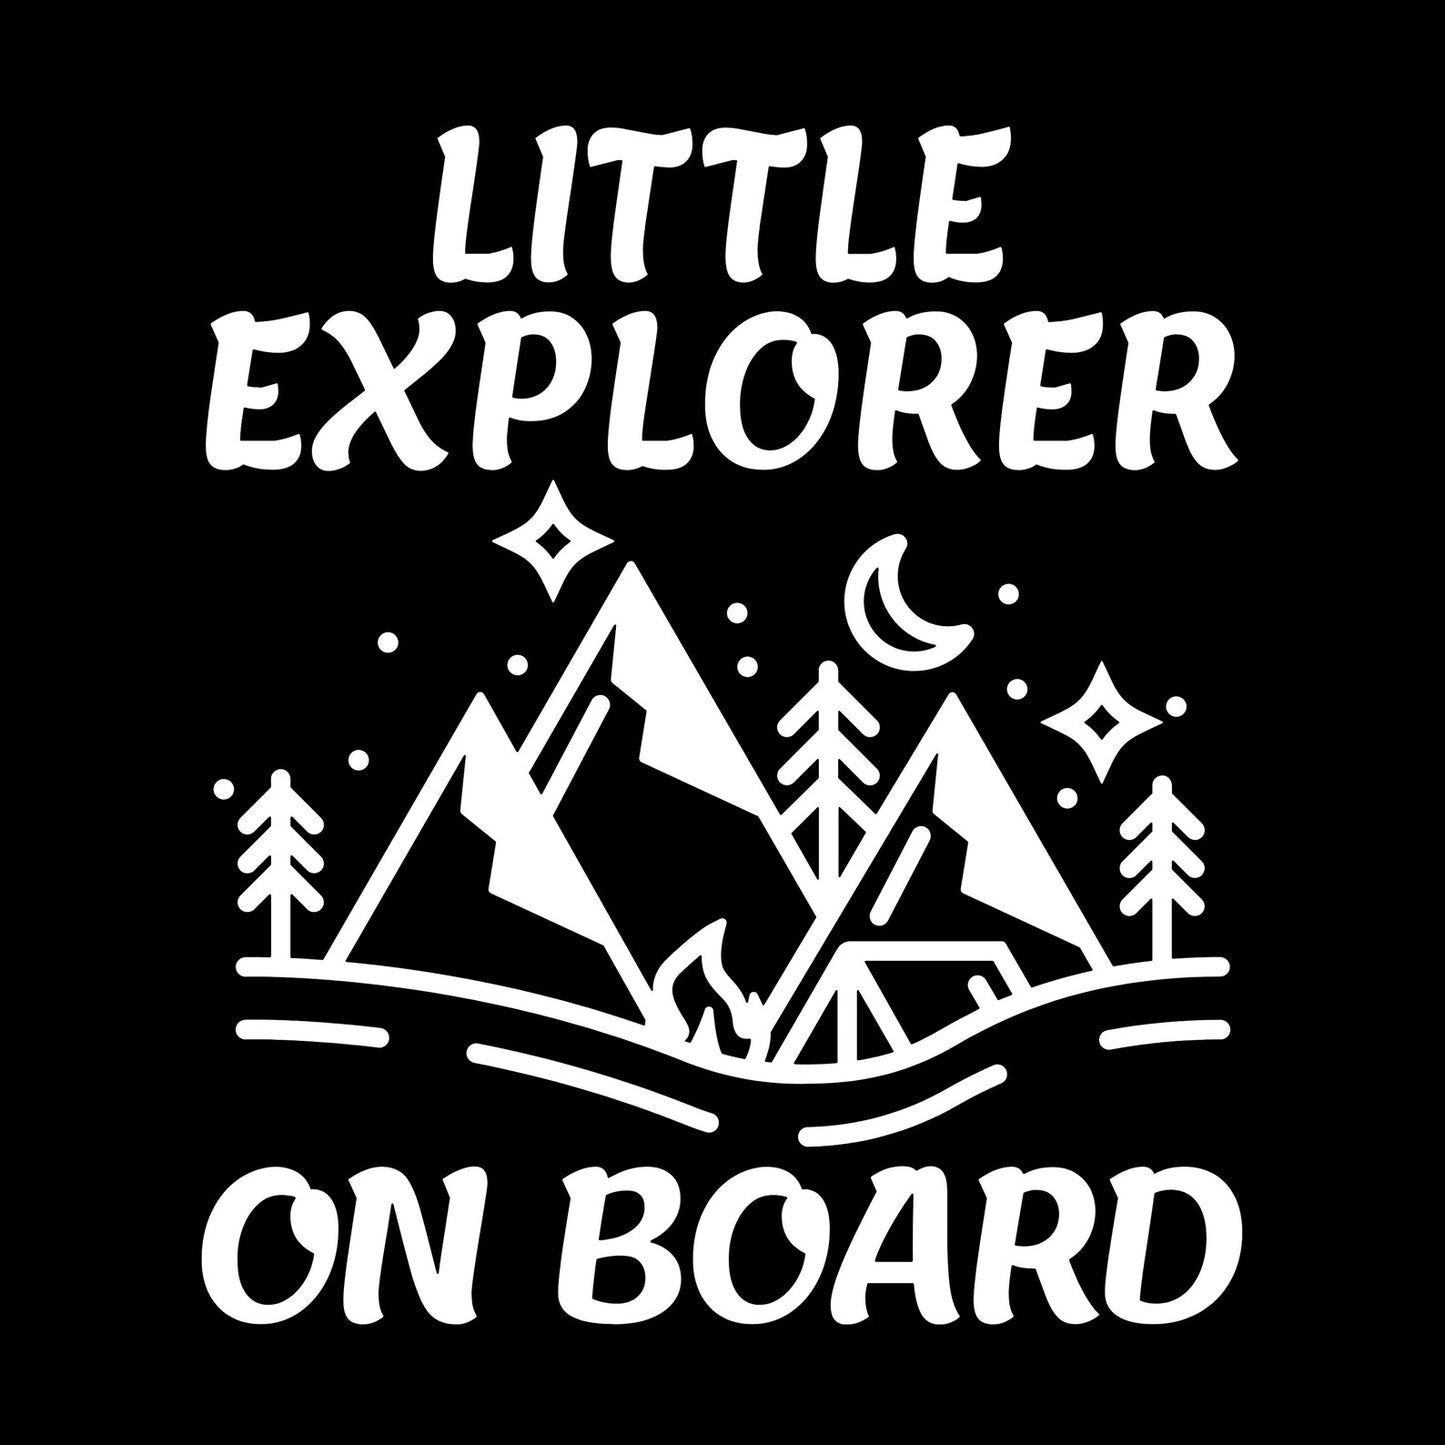 Little Explorer Car Decal Sticker